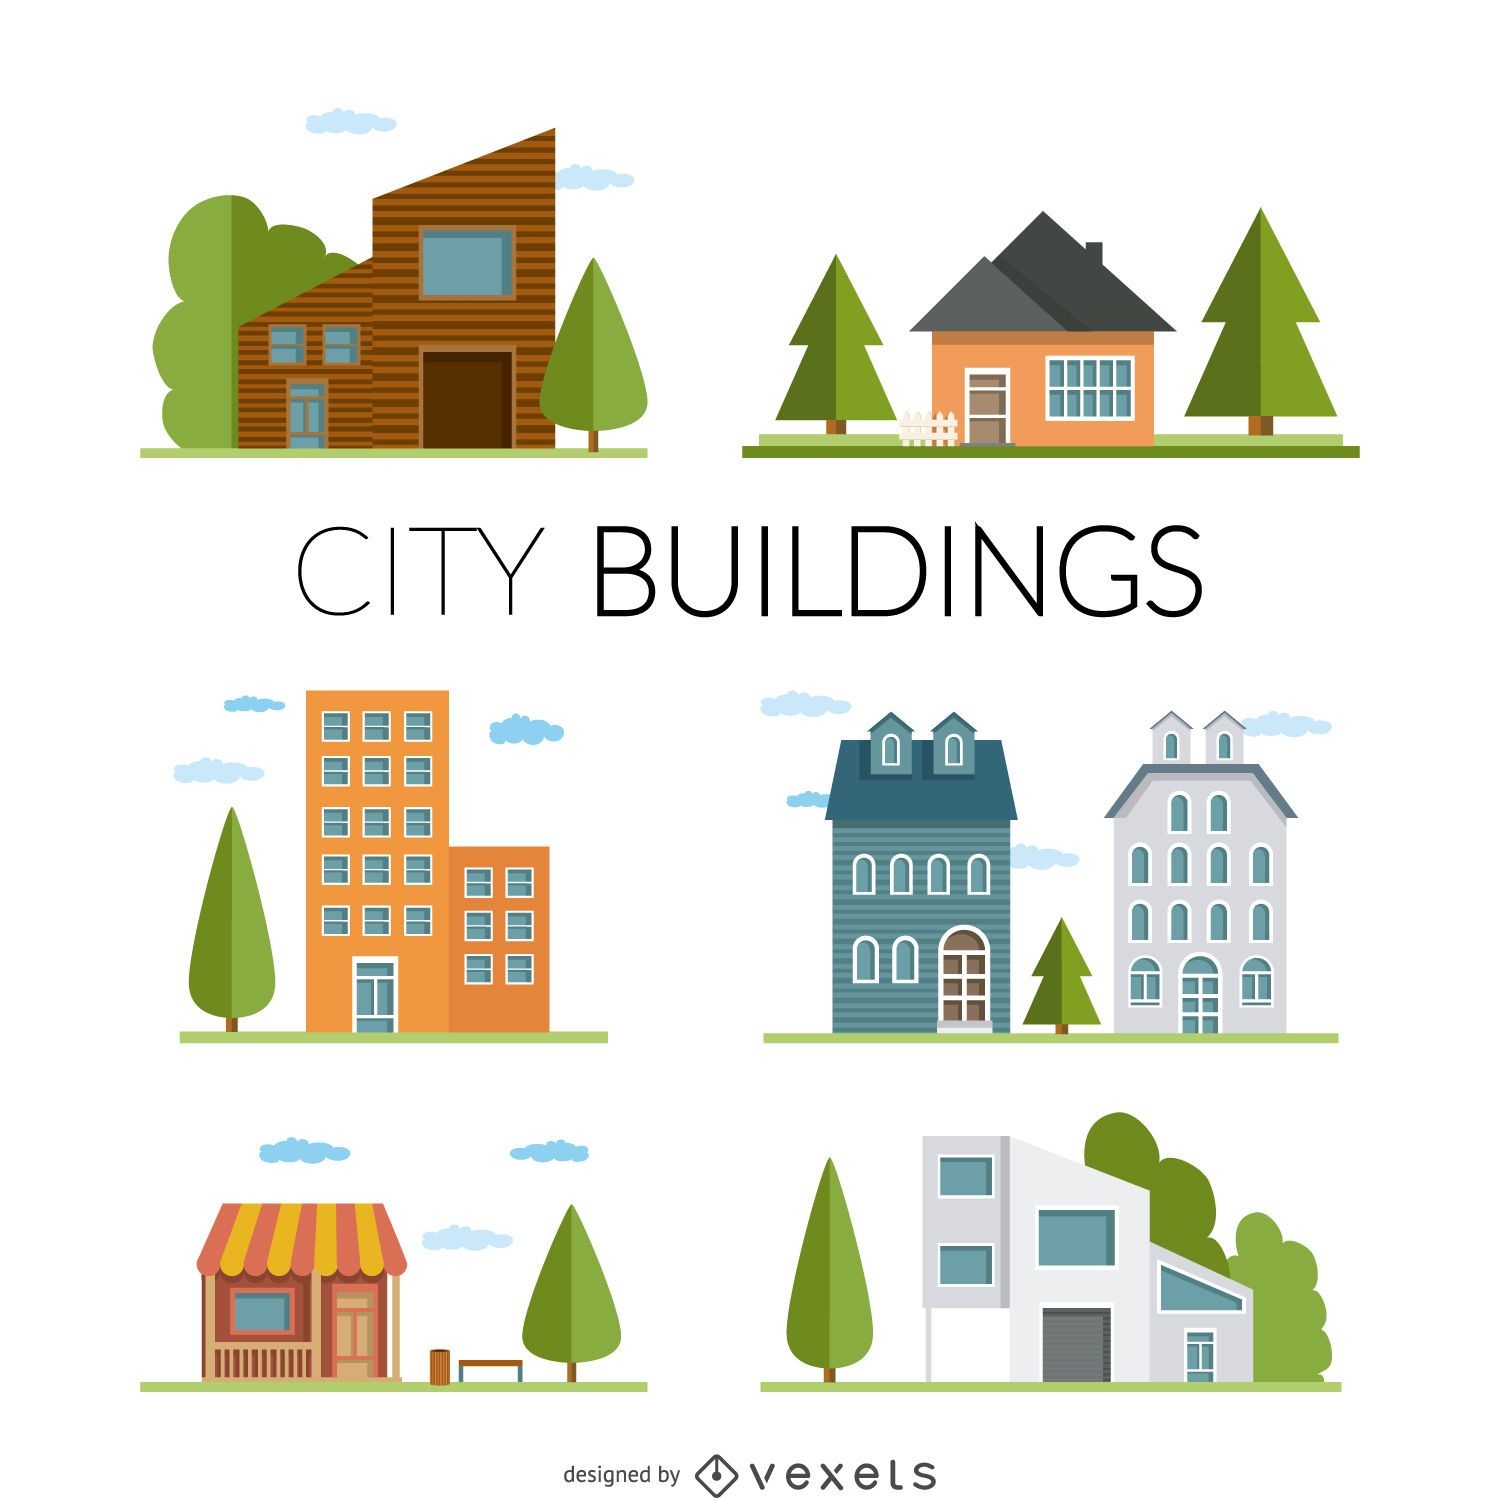 Ilustração de casas e edifícios planos